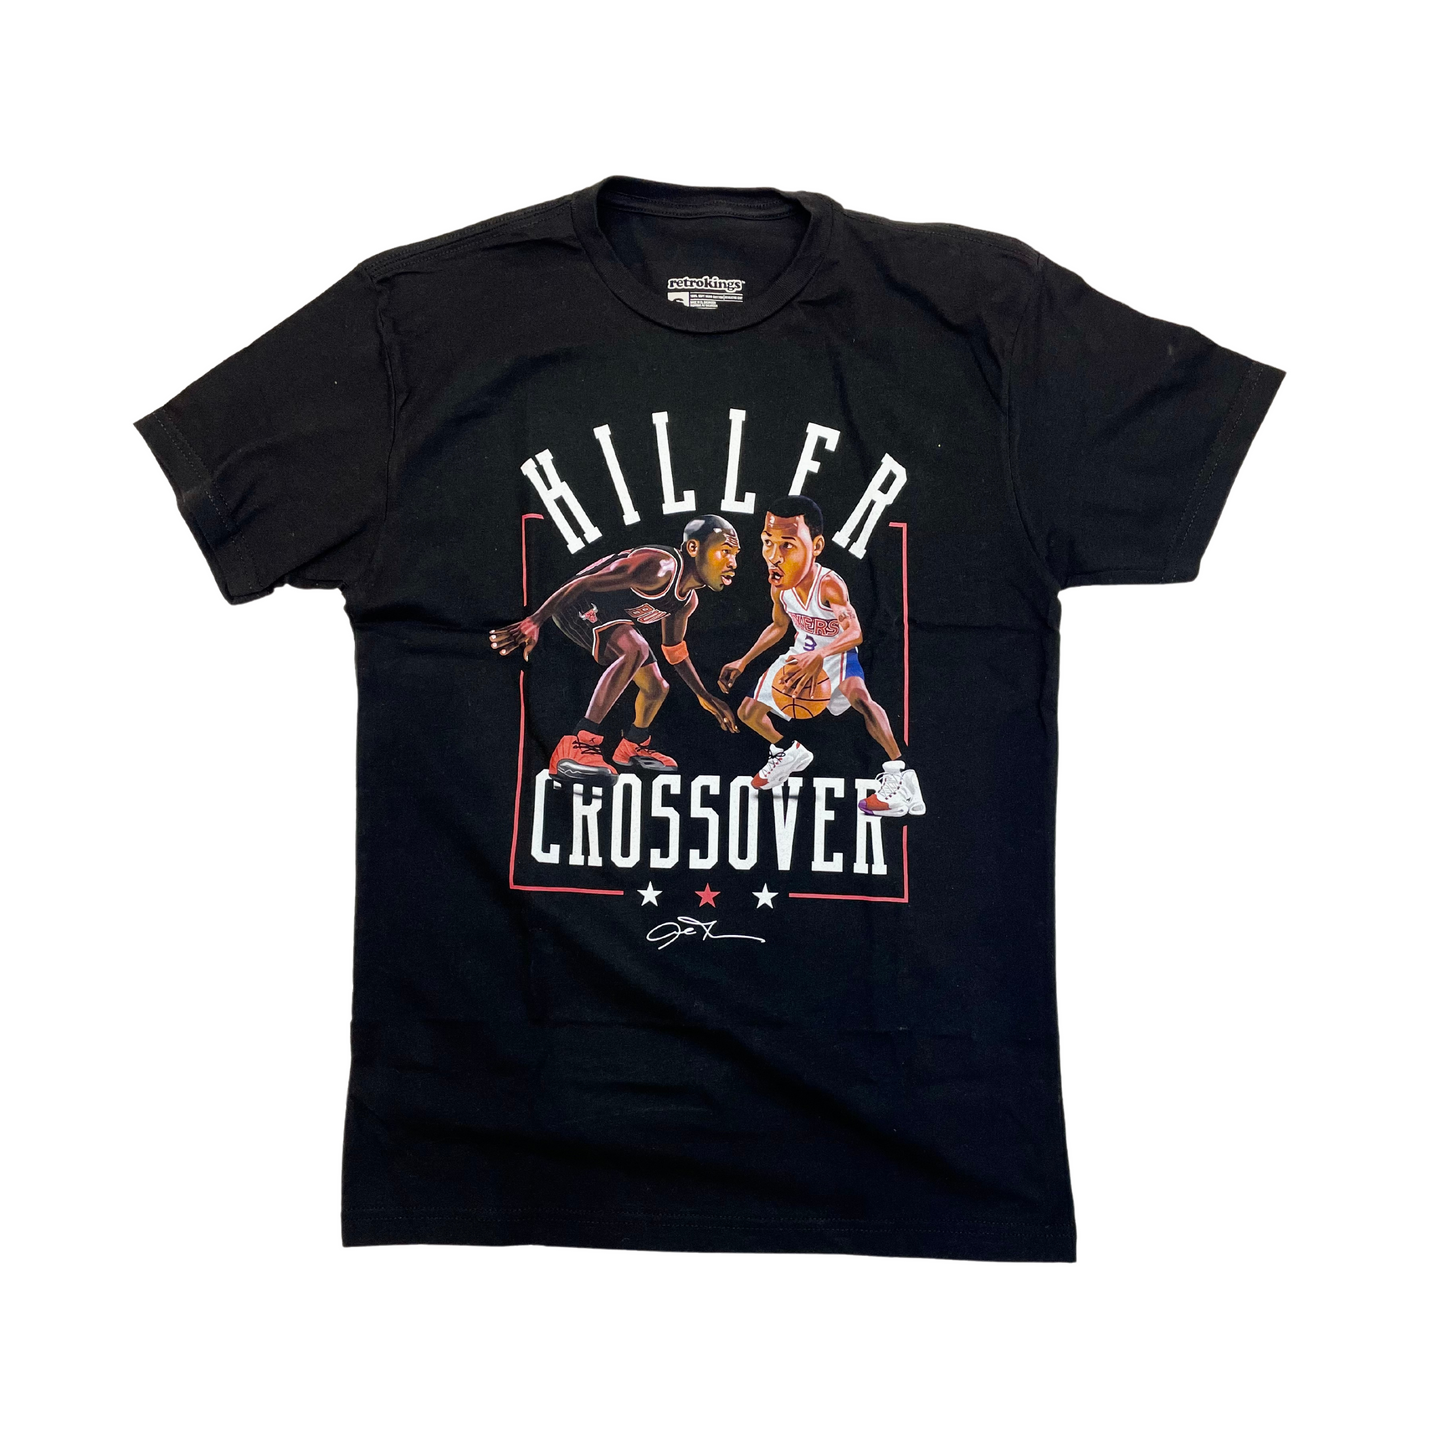 Killer Crossover Jordan VS Iverson T-shirt